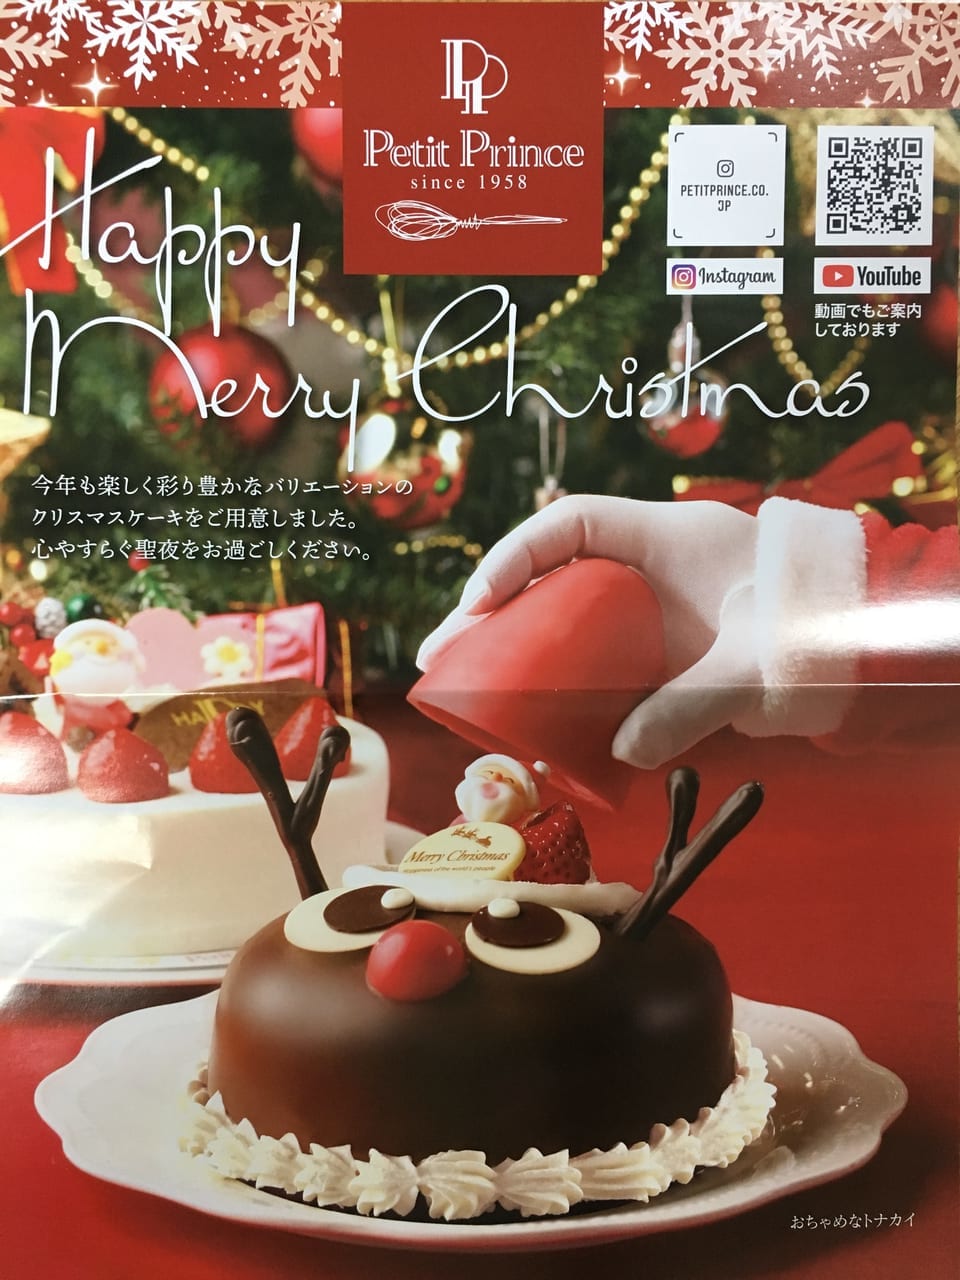 茨木市 プチプランスの新商品はほくほくの栗が入った33 もあるアレ クリスマスケーキの予約も要チェック 号外net 茨木